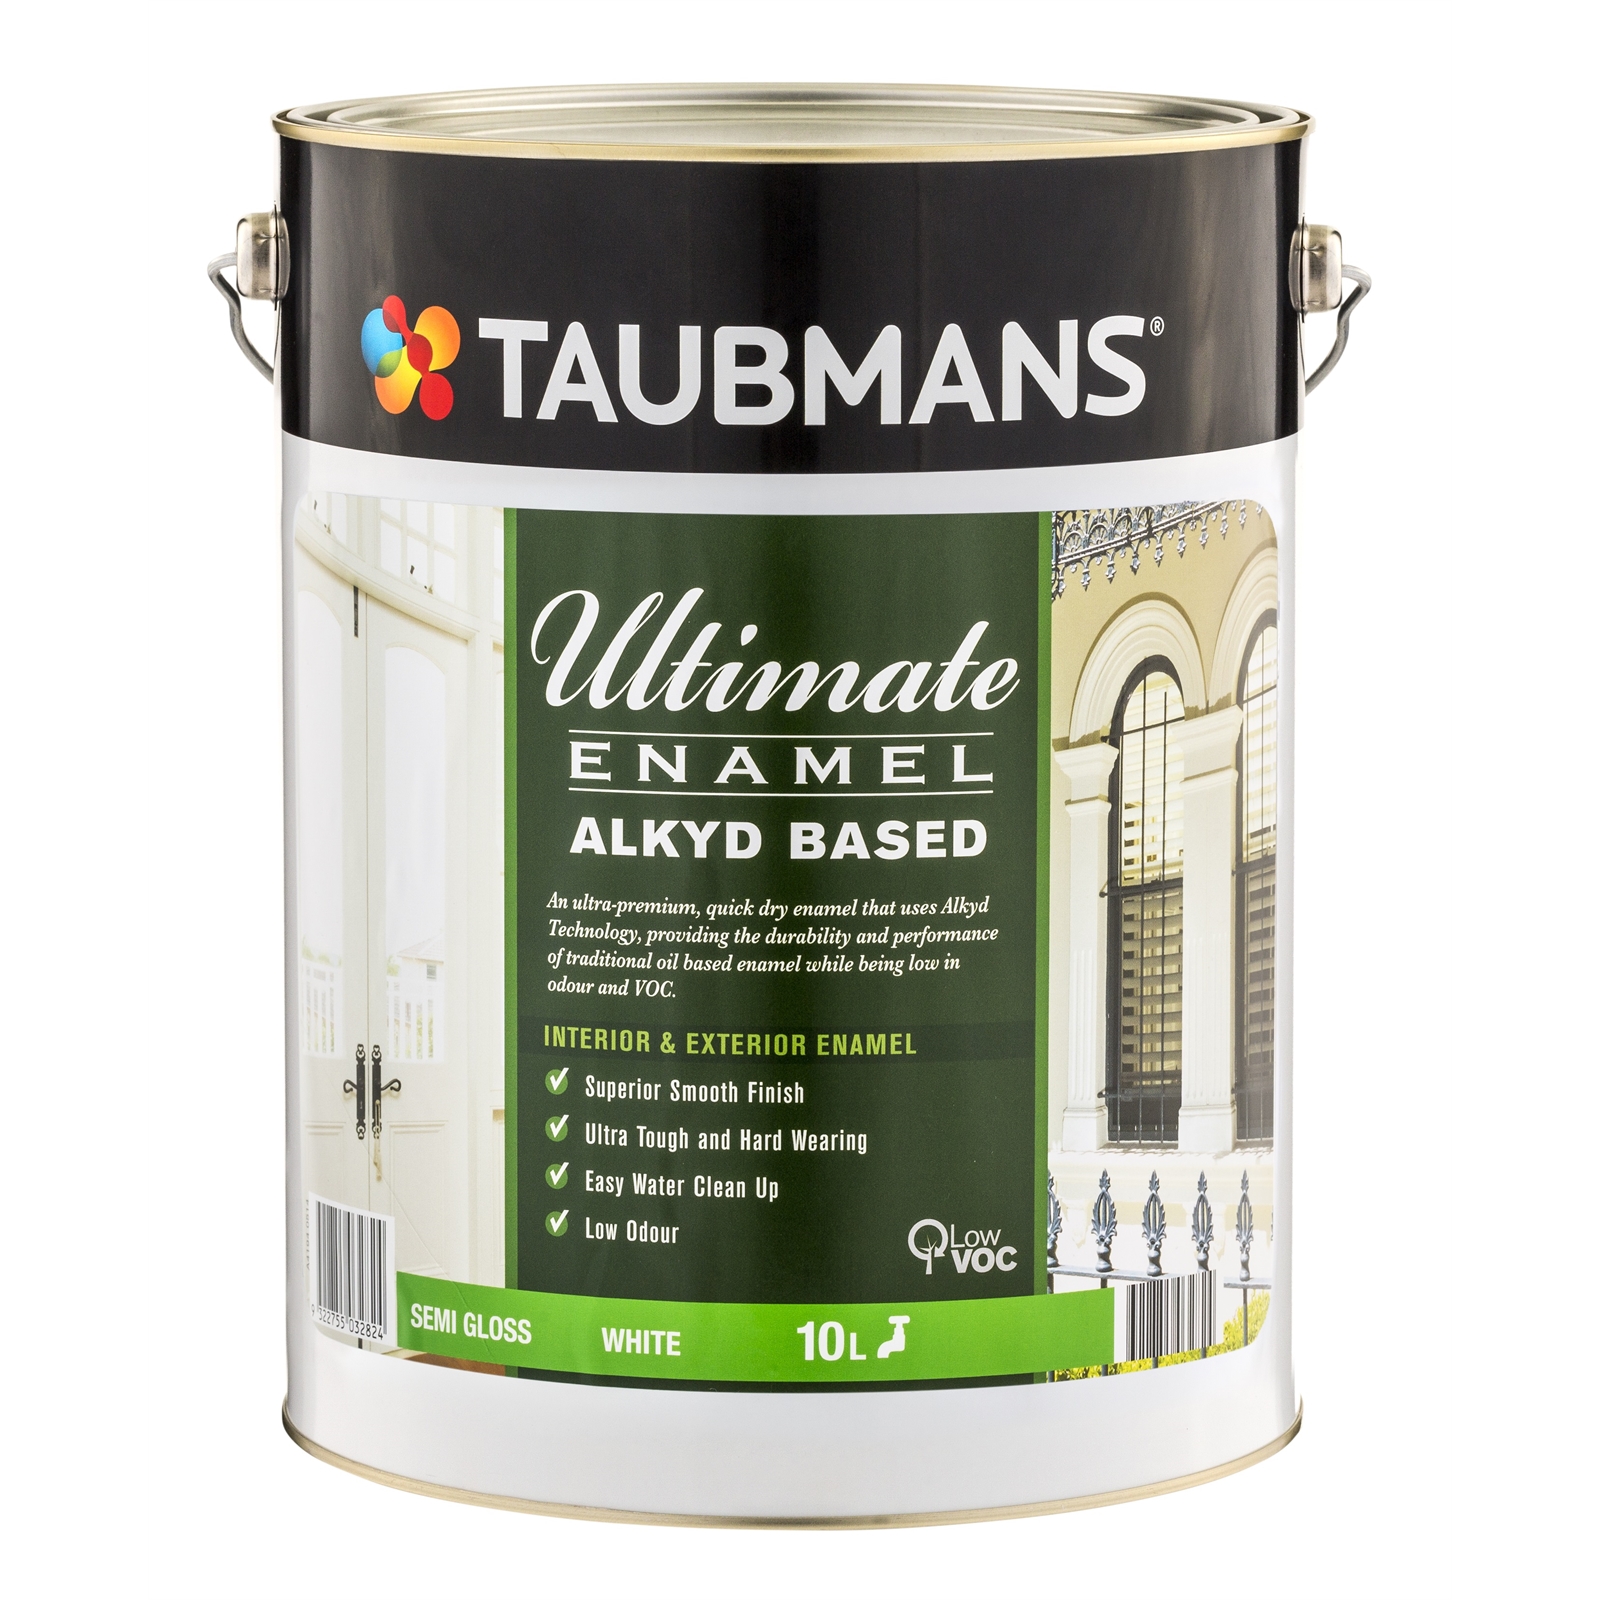 Taubmans Ultimate Enamel 10L White Semi Gloss Alykd Based Enamel